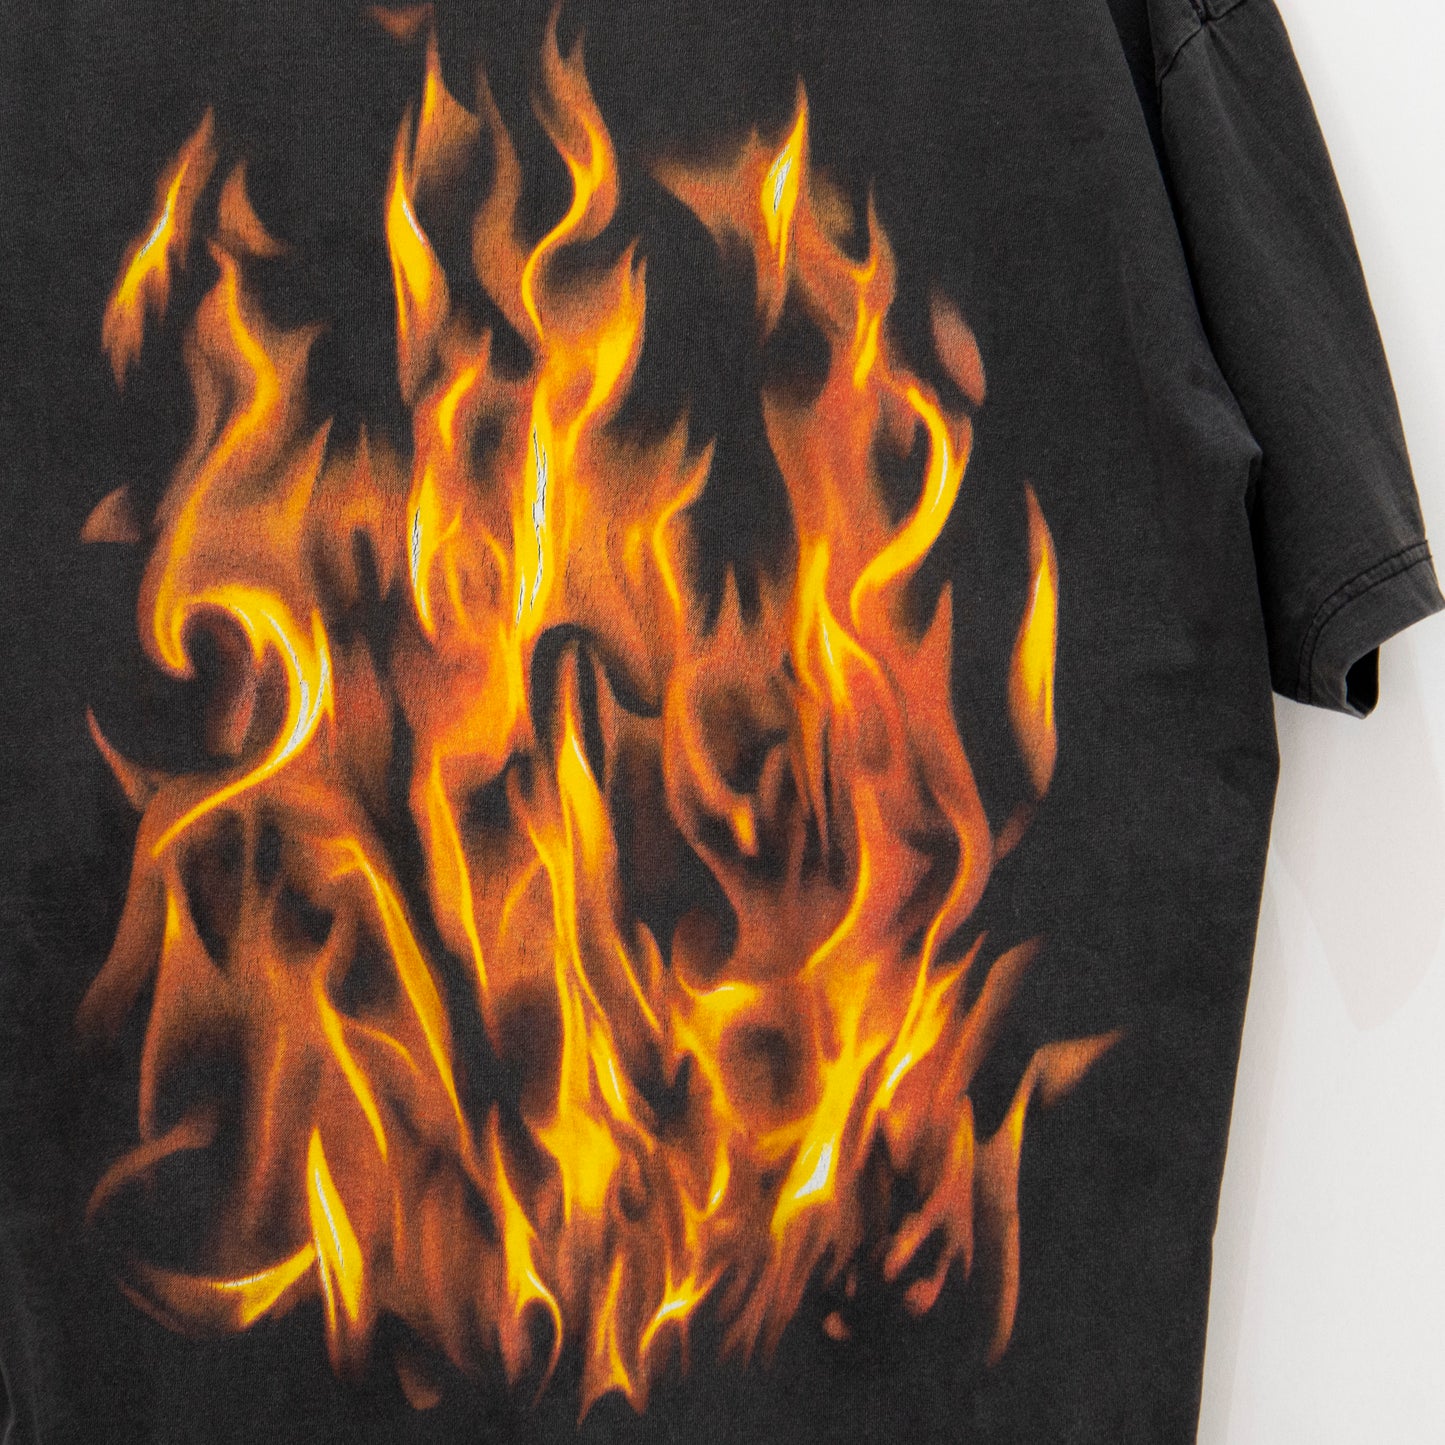 Vintage Fire / Flames T-Shirt XL